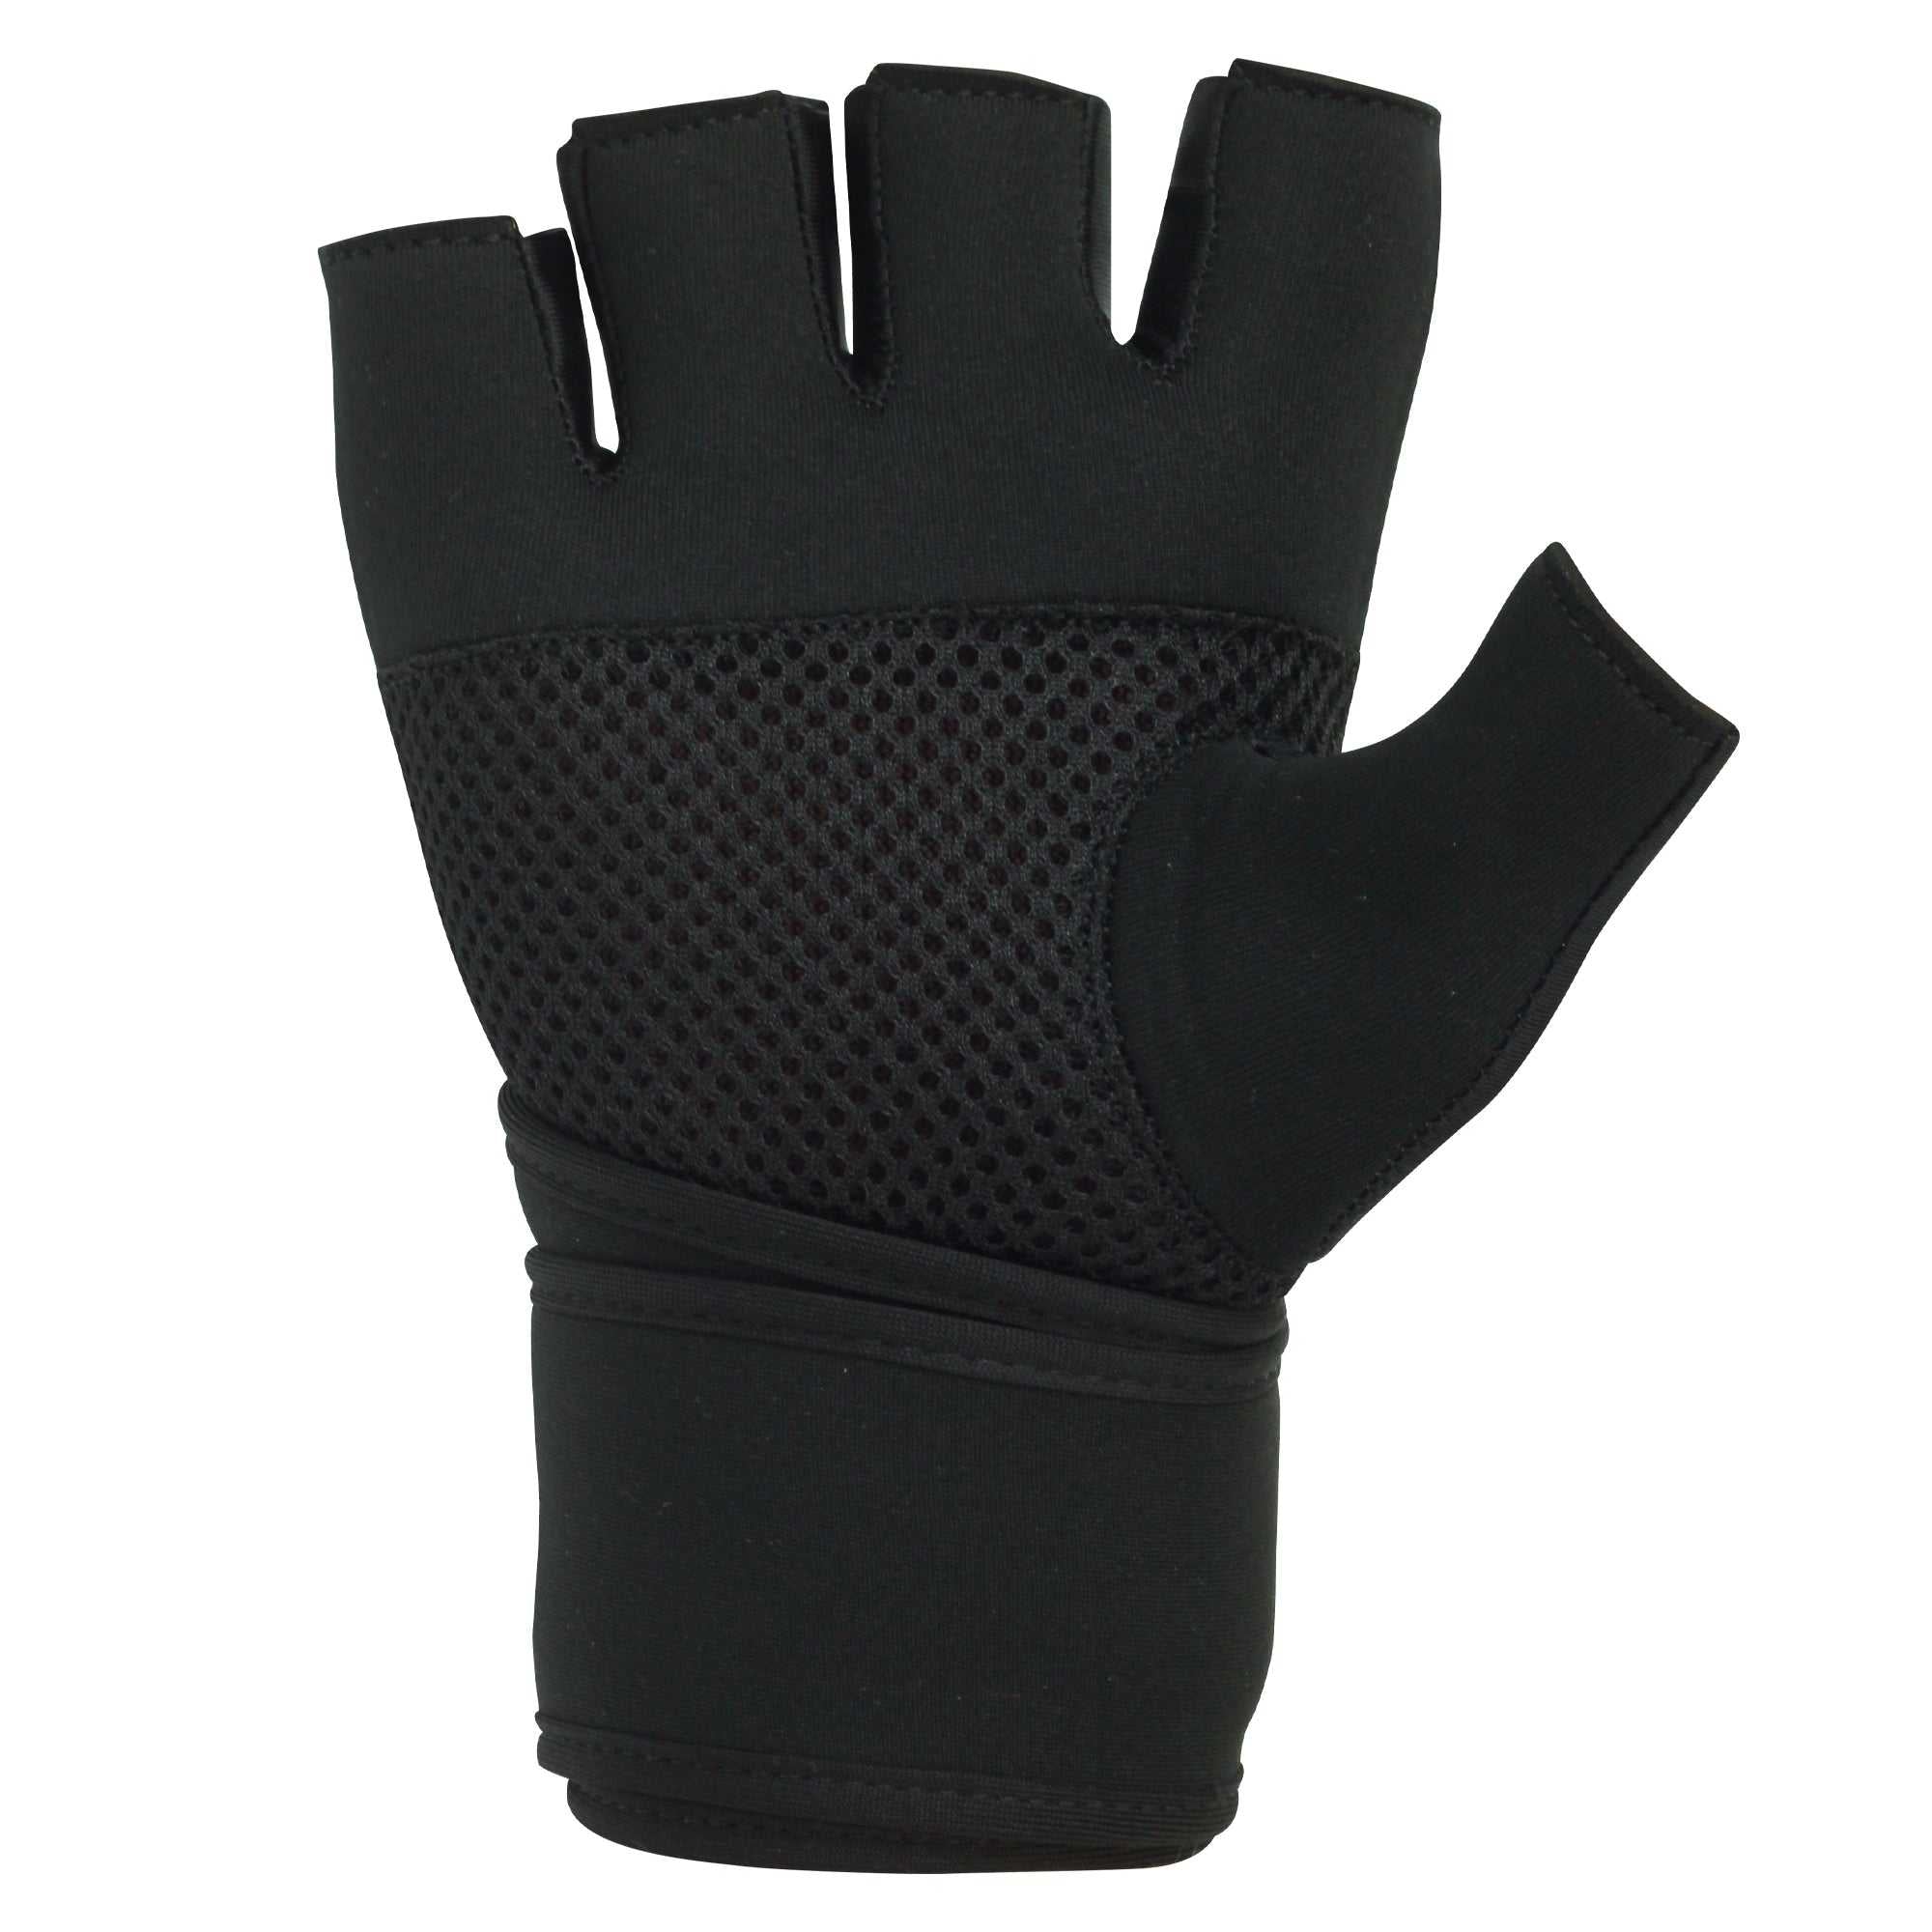 Techpro X14 Gel Inner Gloves - Optimum